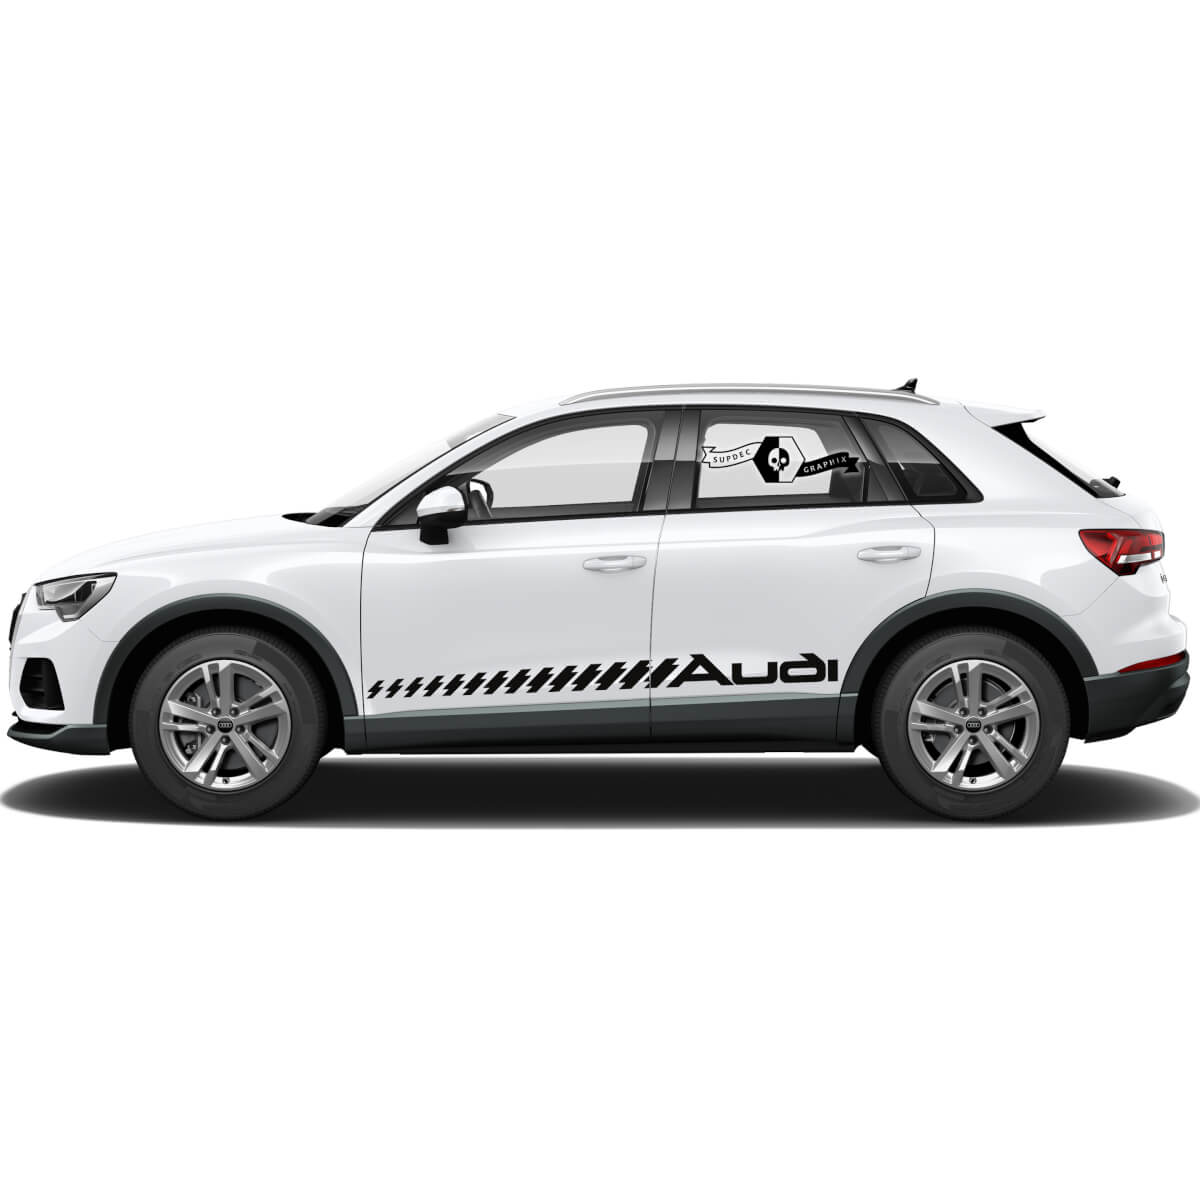 Audi Q3 Stickers Puerta Lado de la puerta Nova para usted Etiqueta engomada de los gráficos de vinilo